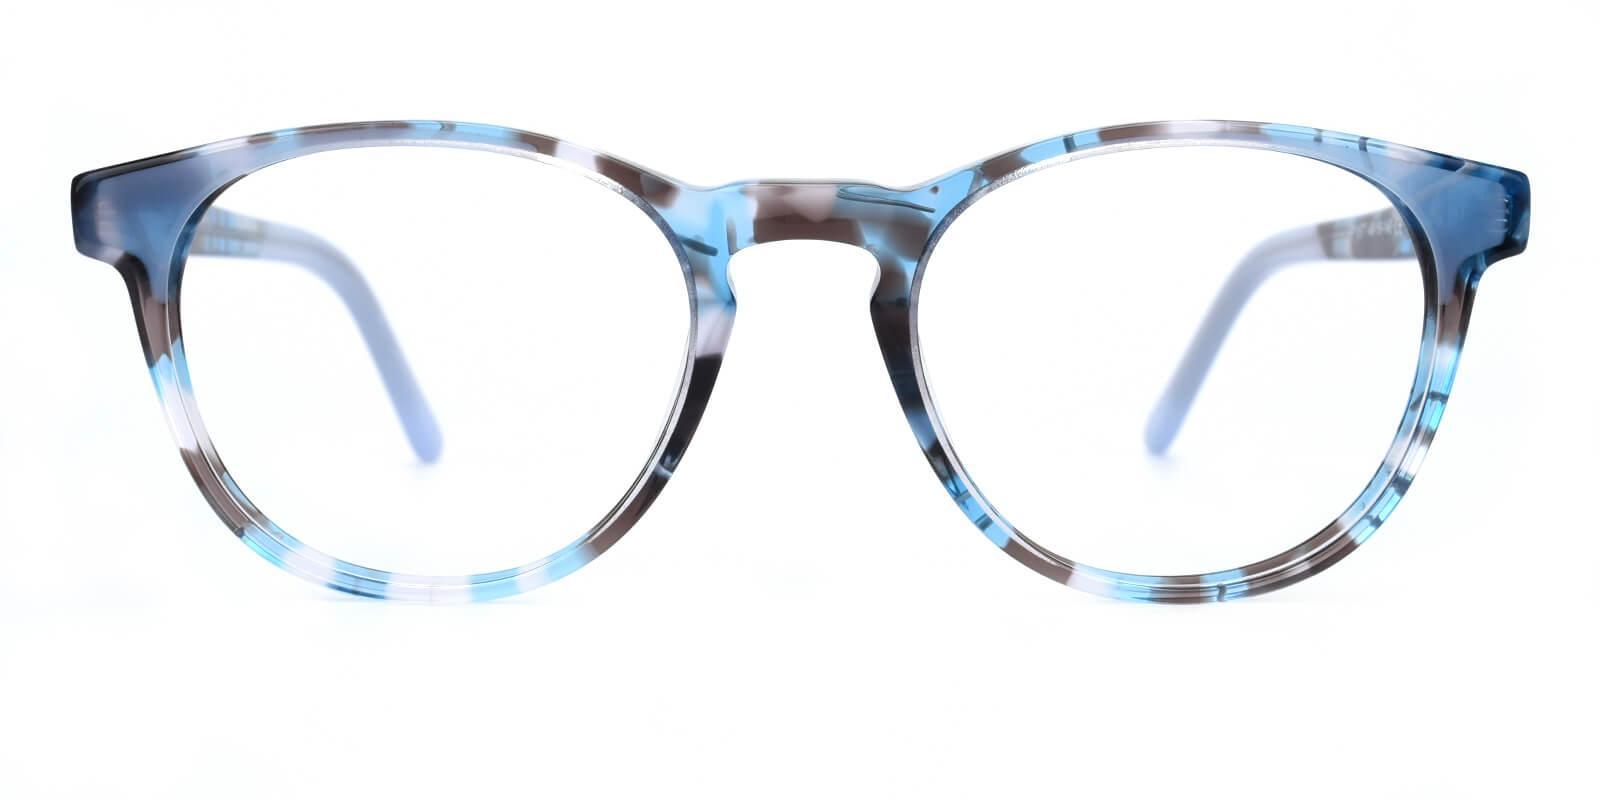 Otava Blue Acetate Eyeglasses , UniversalBridgeFit Frames from ABBE Glasses